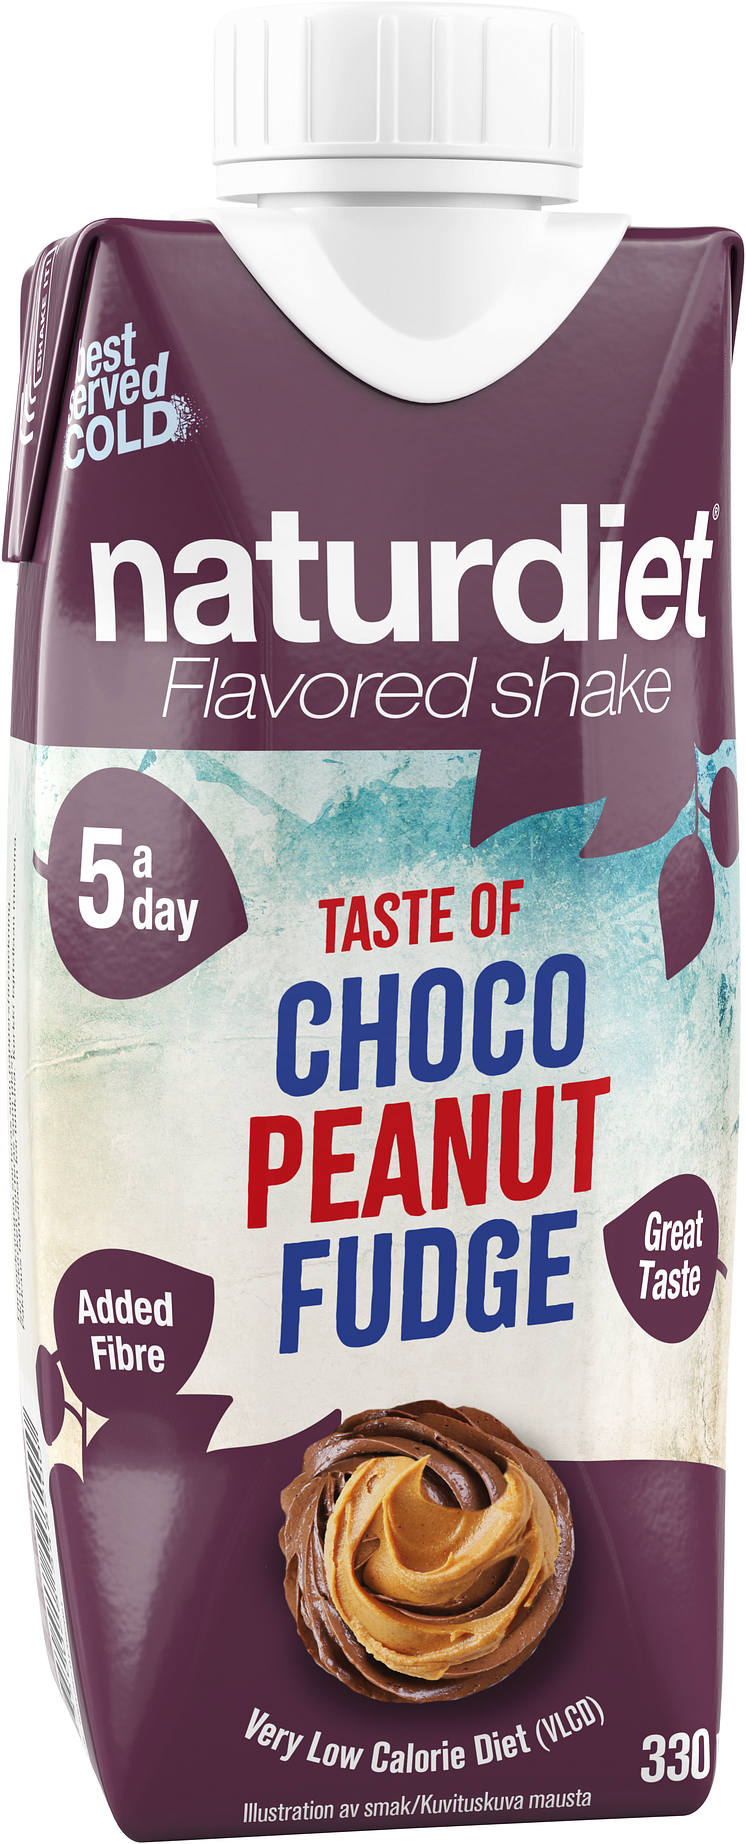 Shake Choco Peanut Fudge